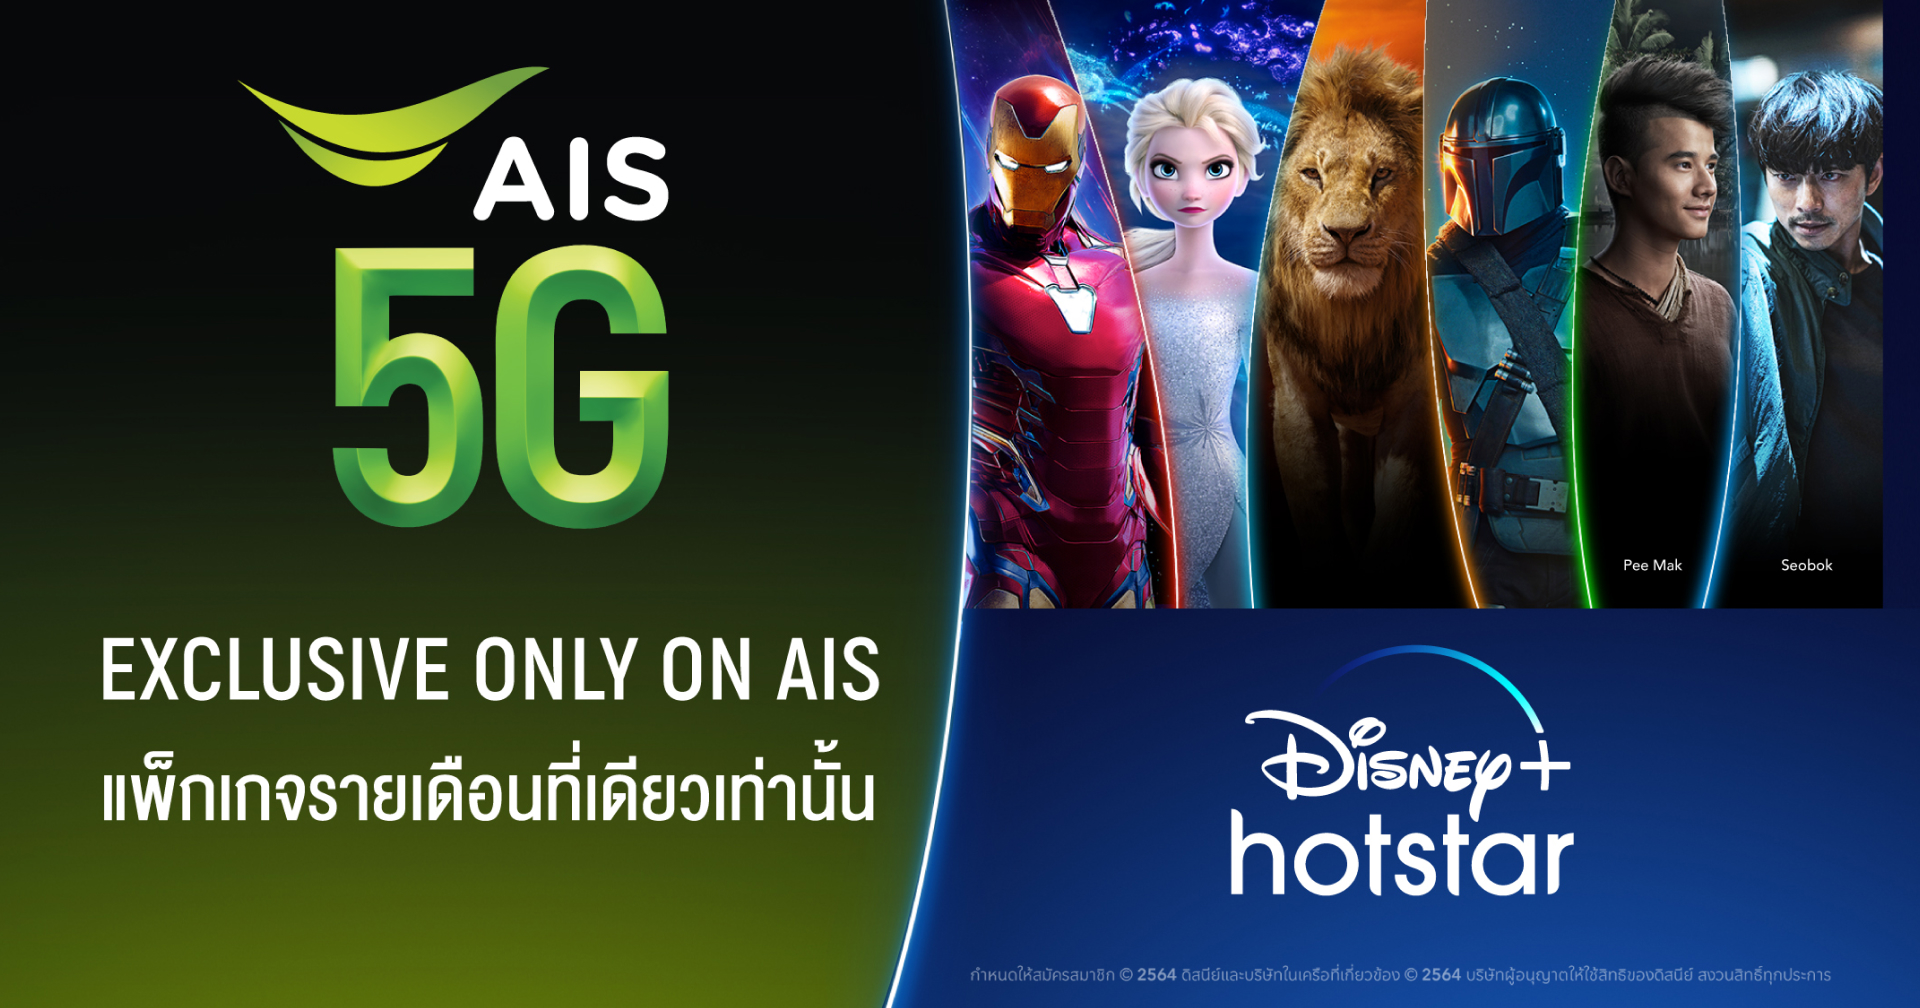 ไขข้อสงสัยสิทธิพิเศษ Disney+ Hotstar จาก AIS ราคา 35 บาทต่อเดือน ค่ายอื่นใช้ได้มั้ย??